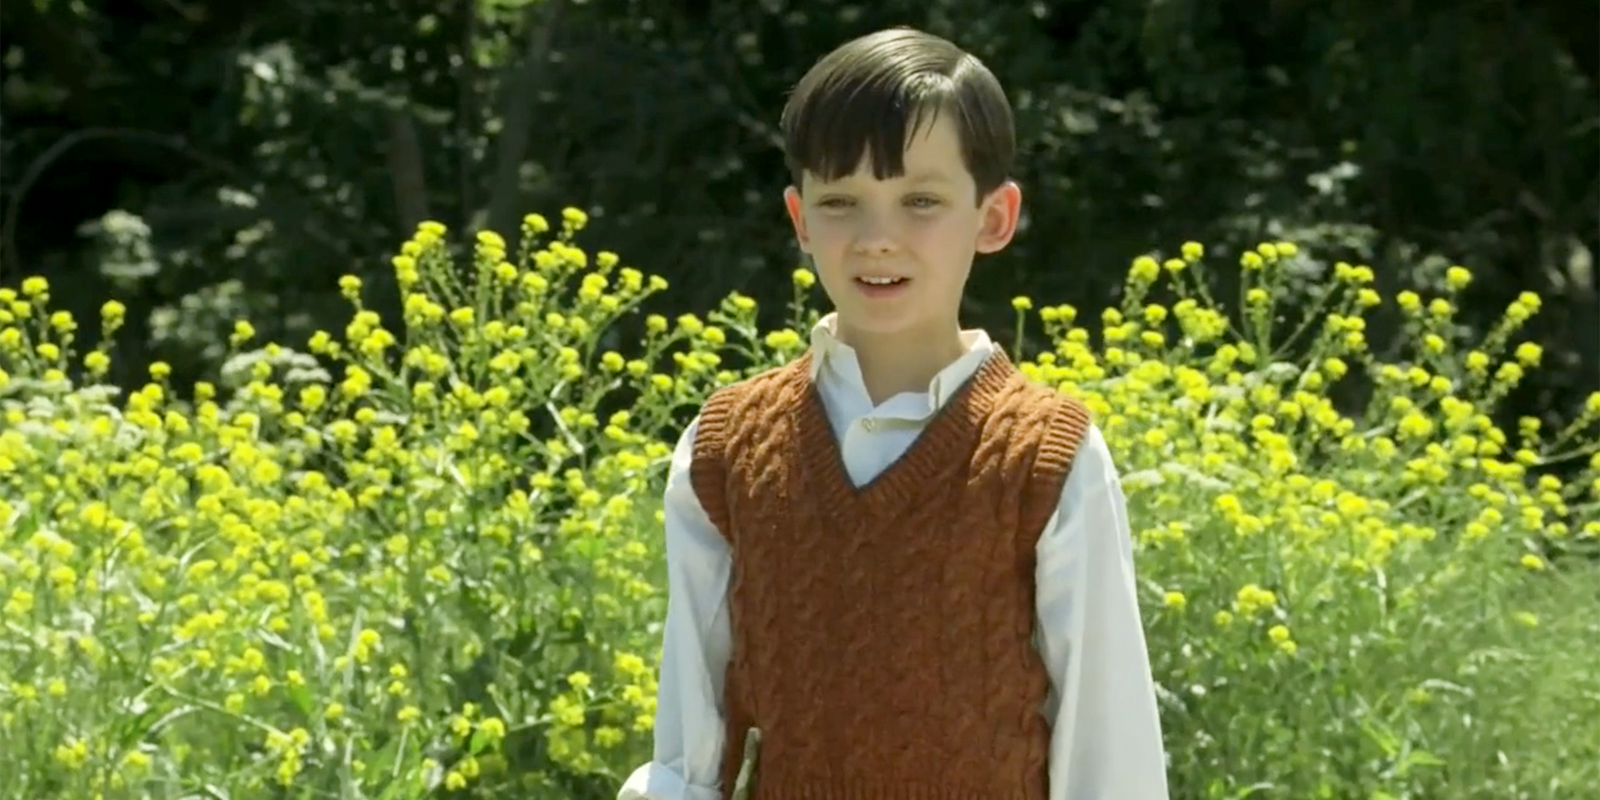 Кадр из фильма «Мальчик в полосатой пижаме». Режиссер М. Херман. 2008 год